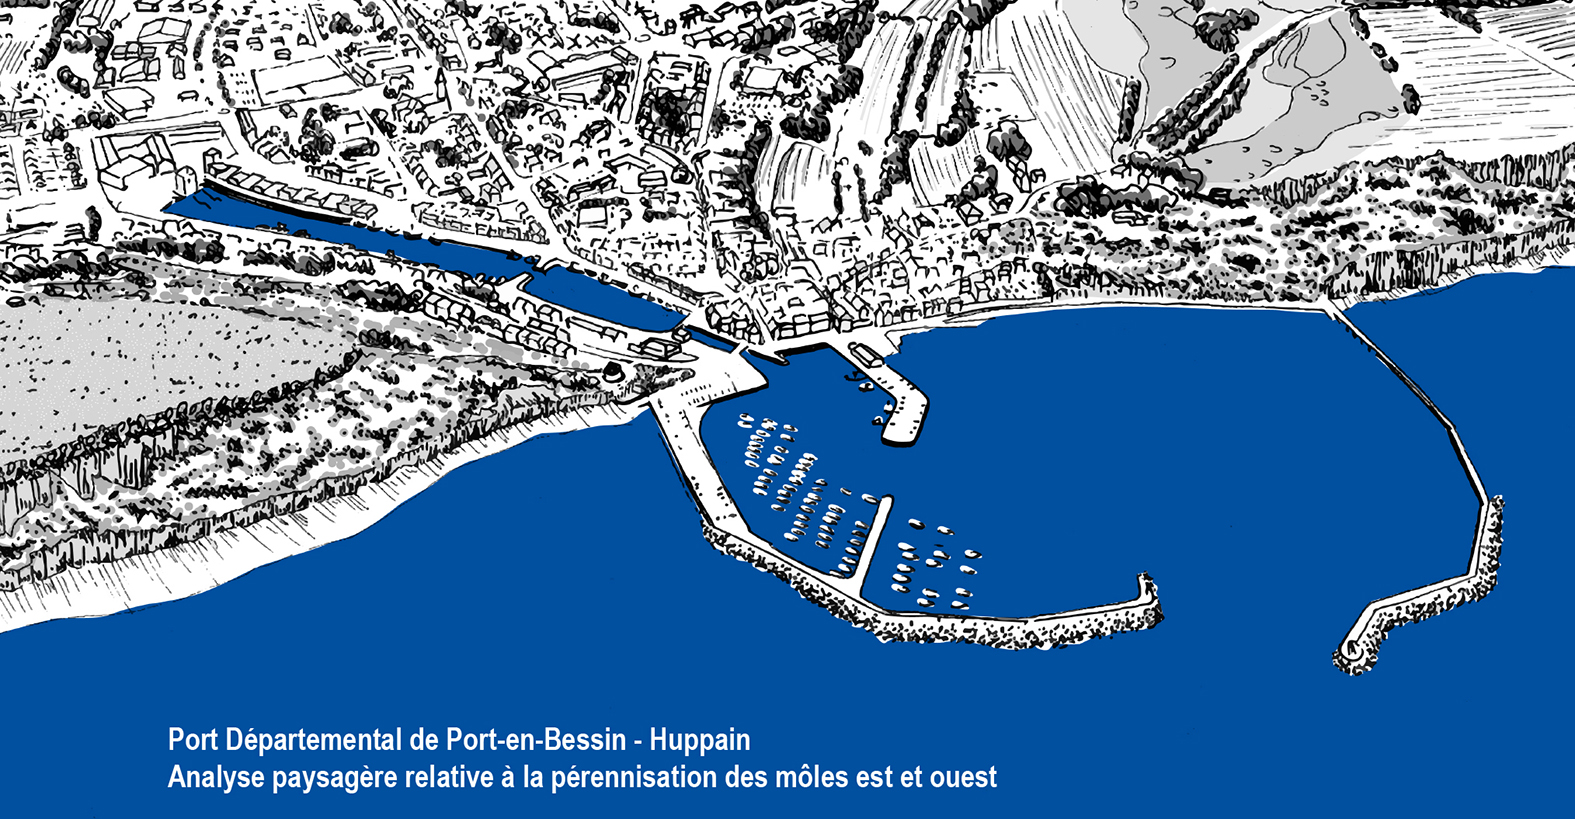 Présentation du projet d’aménagement du port de Port en Bessin